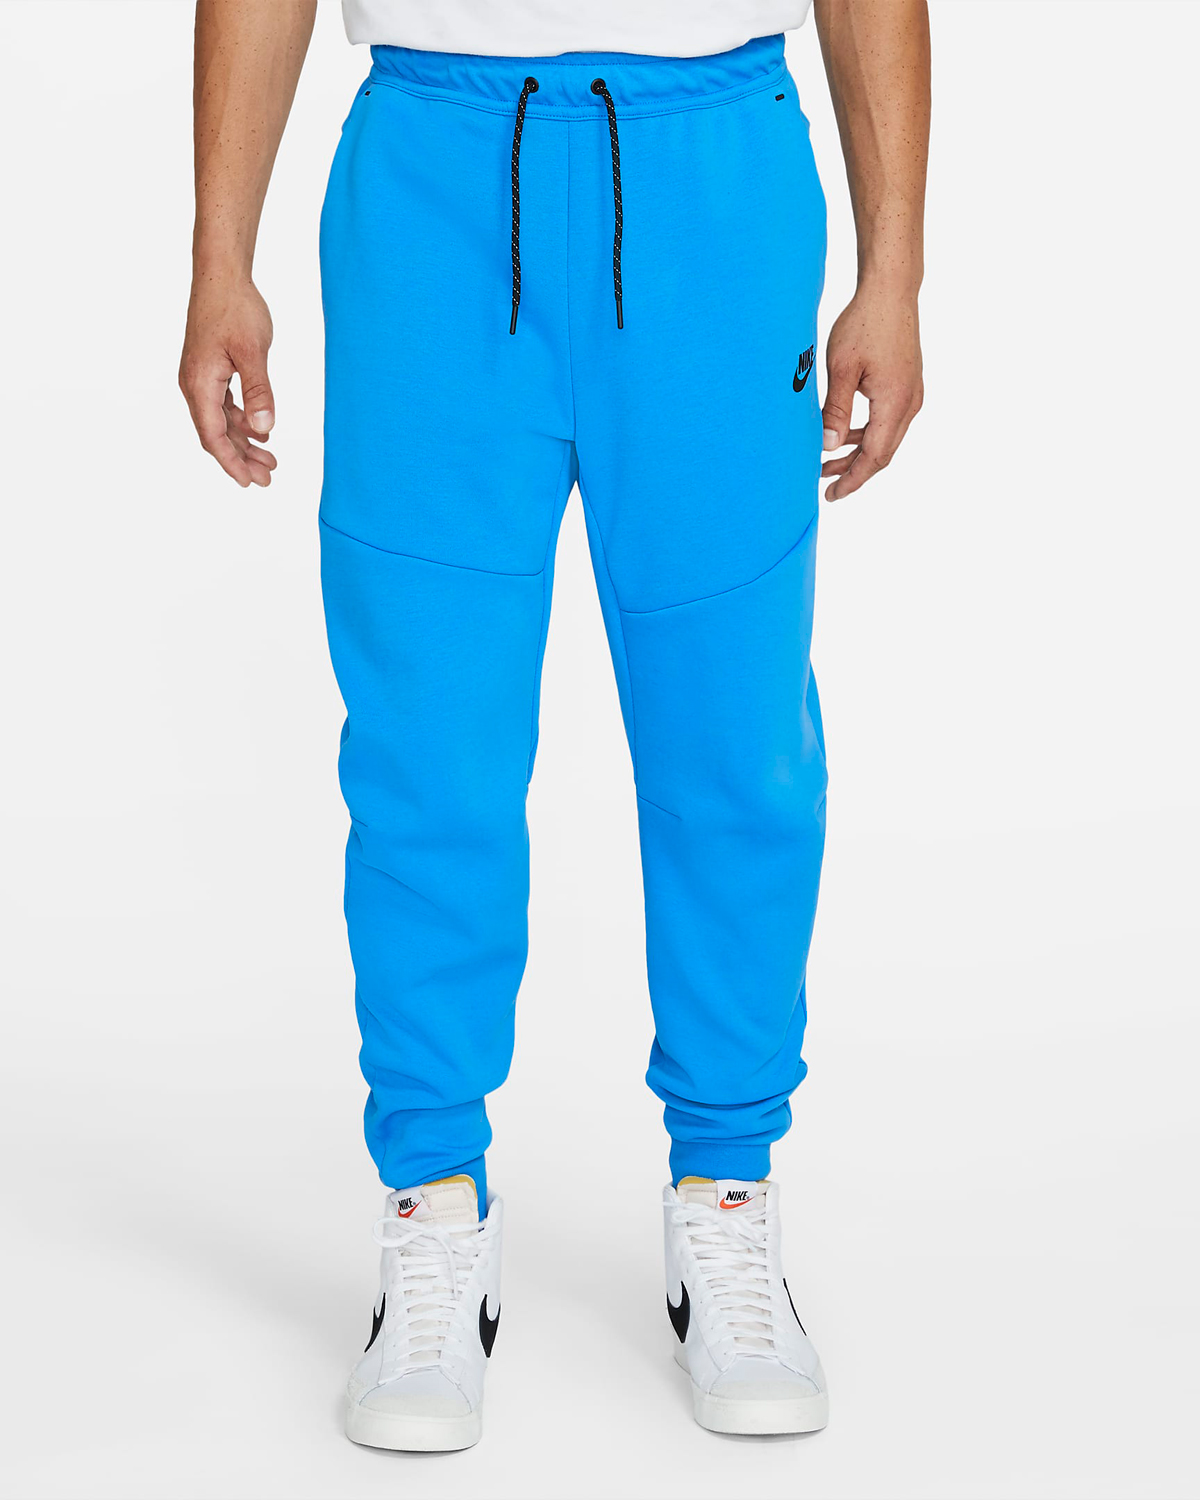 nike-tech-fleece-jogger-pants-light-photo-blue